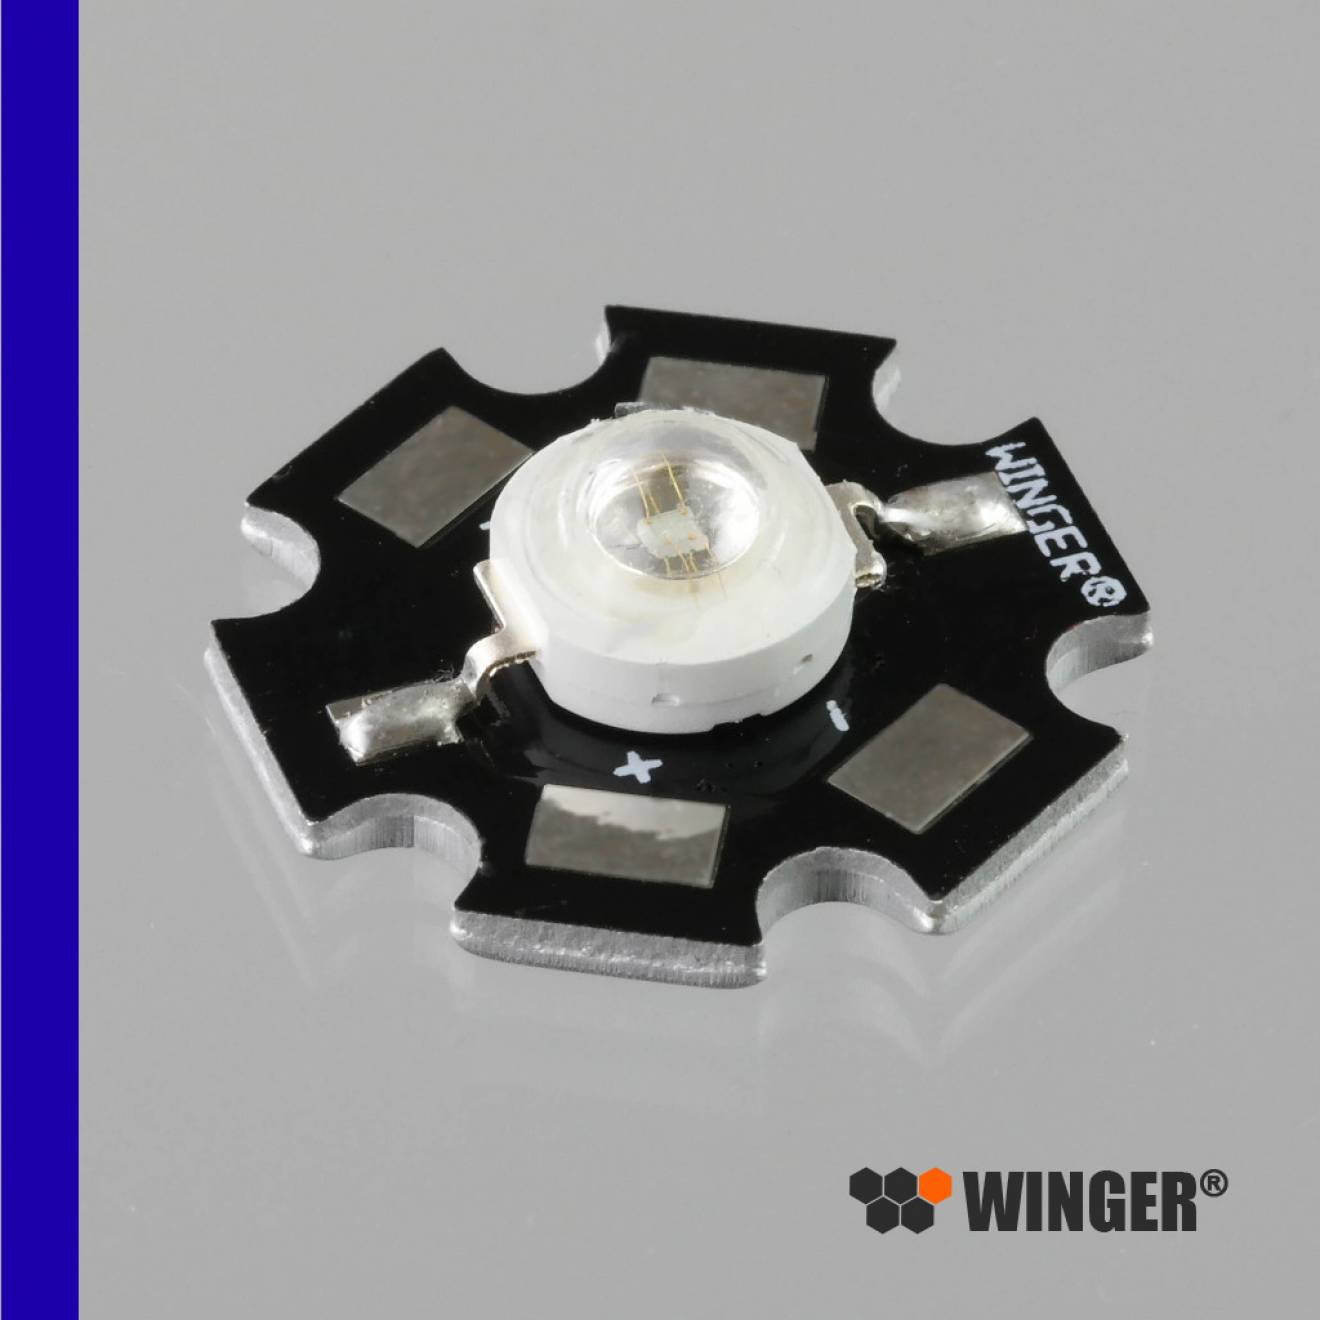 WINGER® WEPRB1-S1 Power LED Star royalblau (450nm) 1W - 20lm